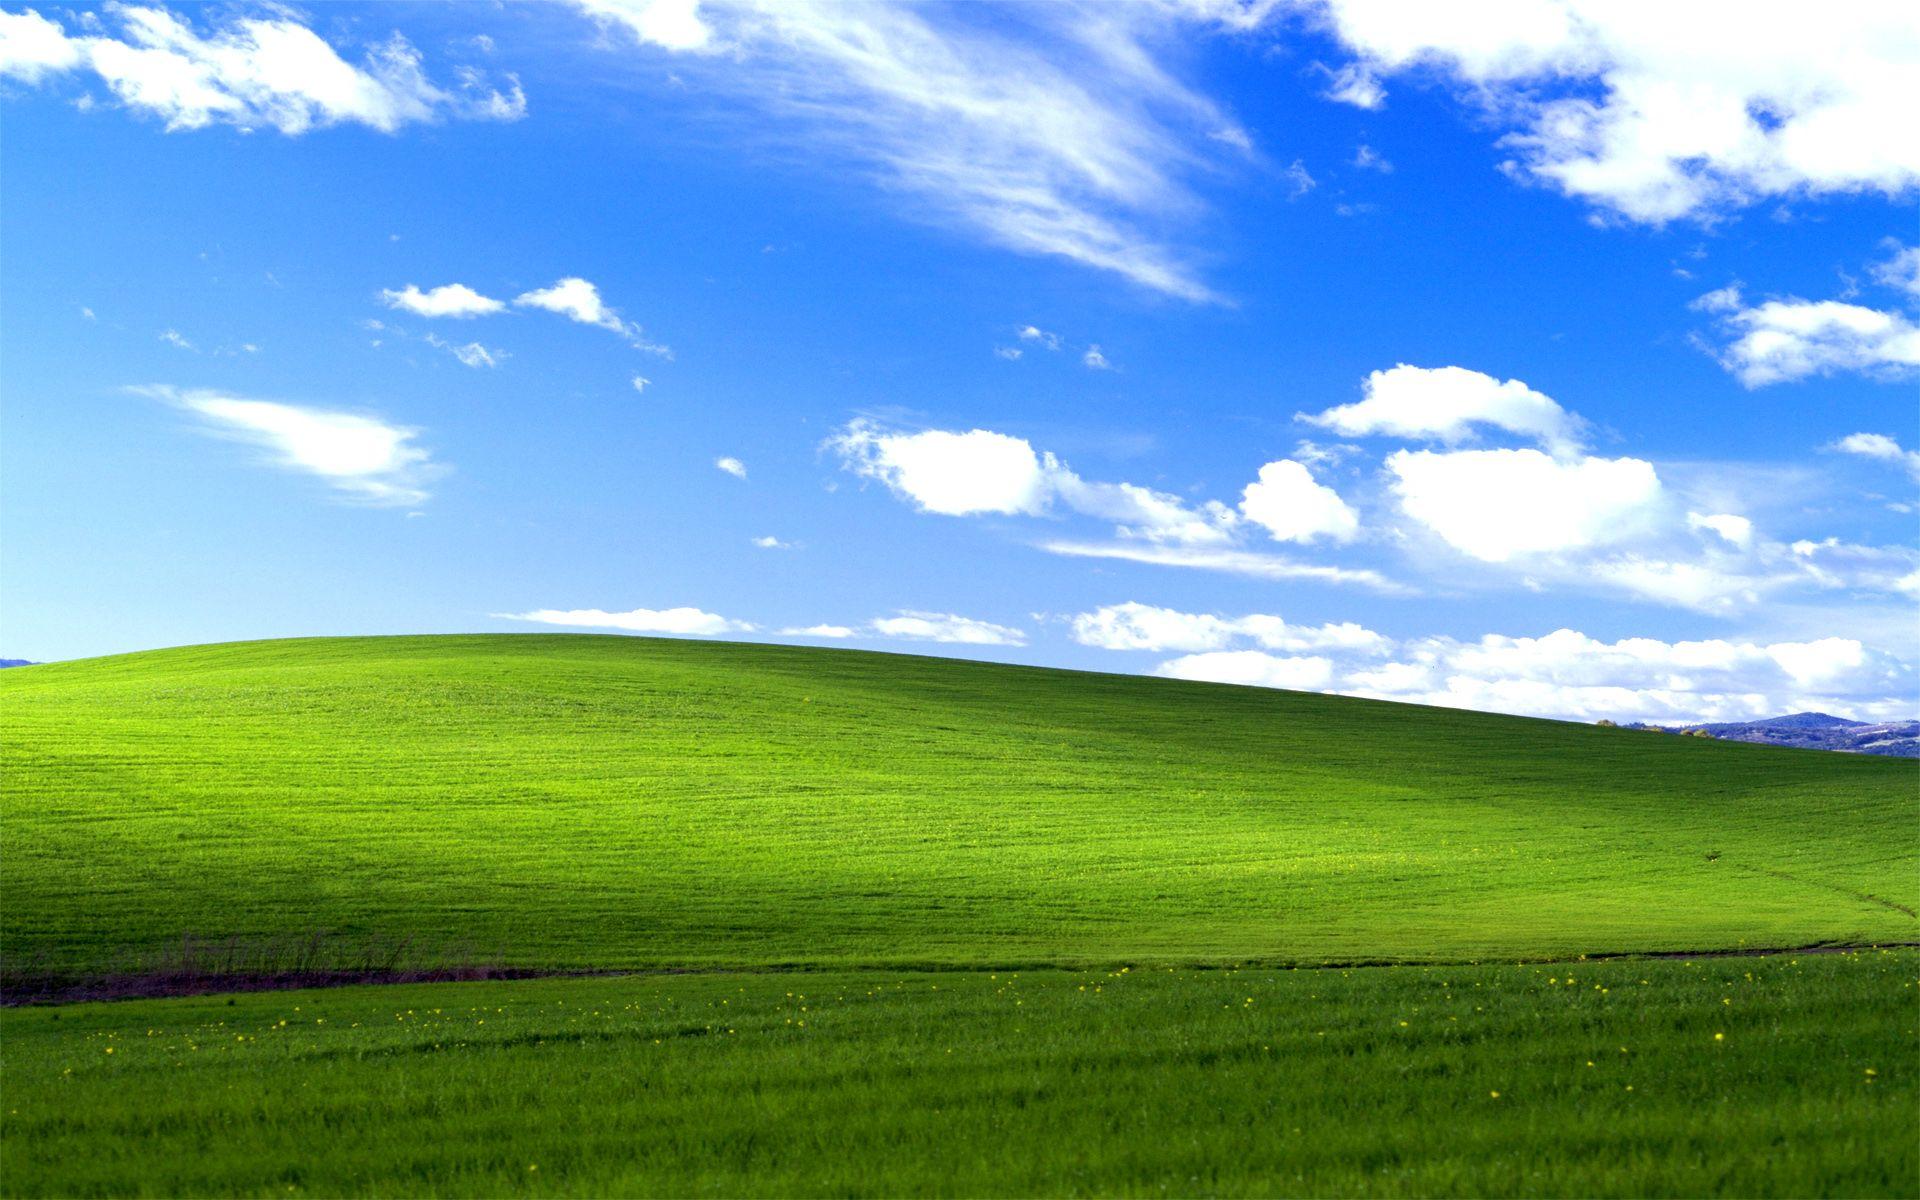 Dành cho những ai vẫn trung thành với Windows XP, hình nền là một phần quan trọng để tạo nên giao diện máy tính của họ. Với tùy chọn đa dạng từ hình ảnh thiên nhiên đến trừu tượng, bạn sẽ chắc chắn tìm thấy một hình nền phù hợp.